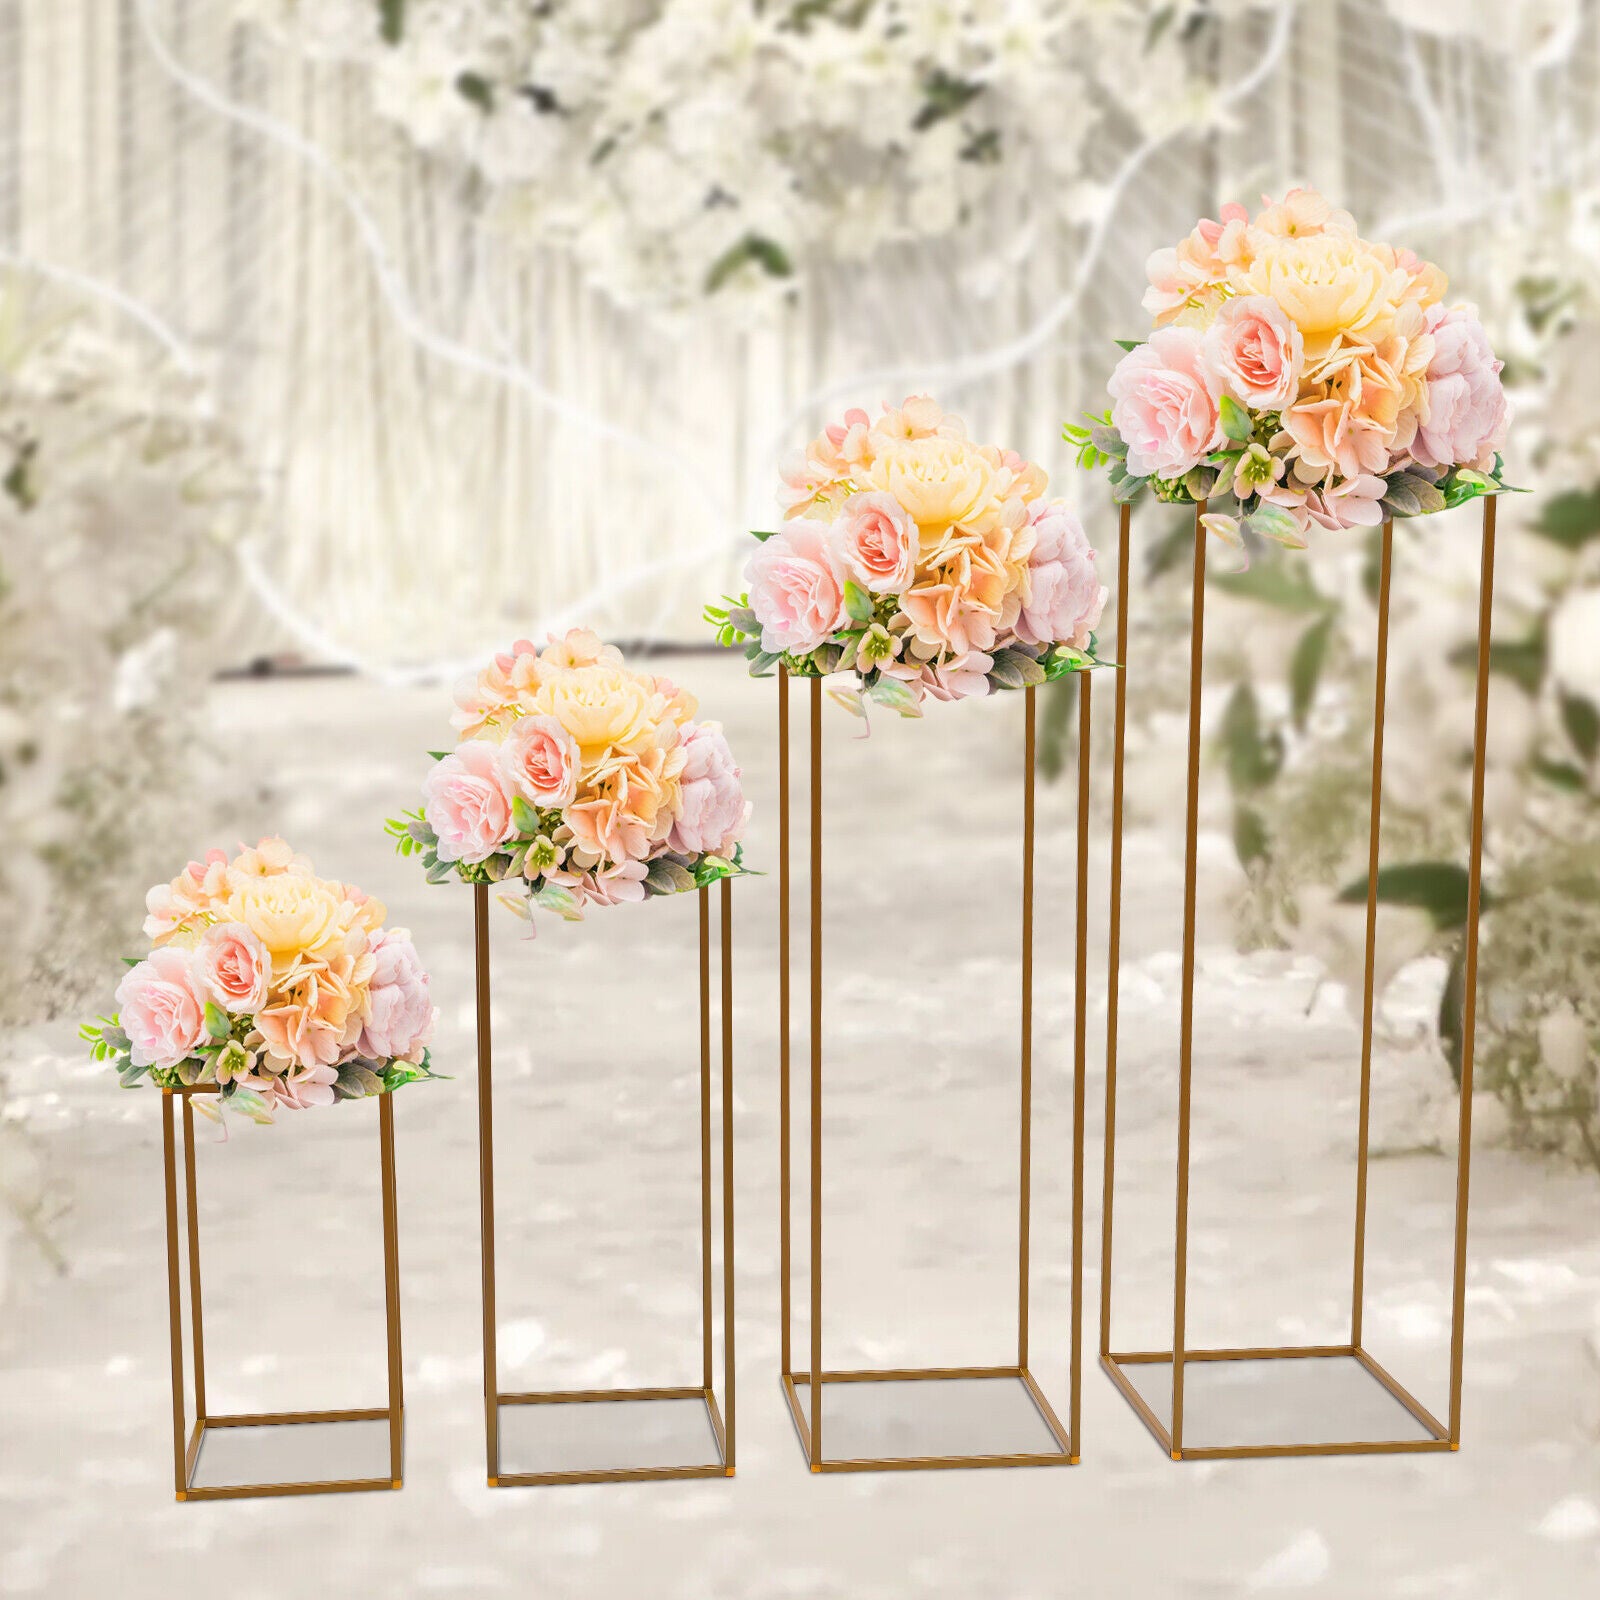 4Pcs Blumenständer Metall Hochzeit Dekor Blumenvase Blumen Säulenständer